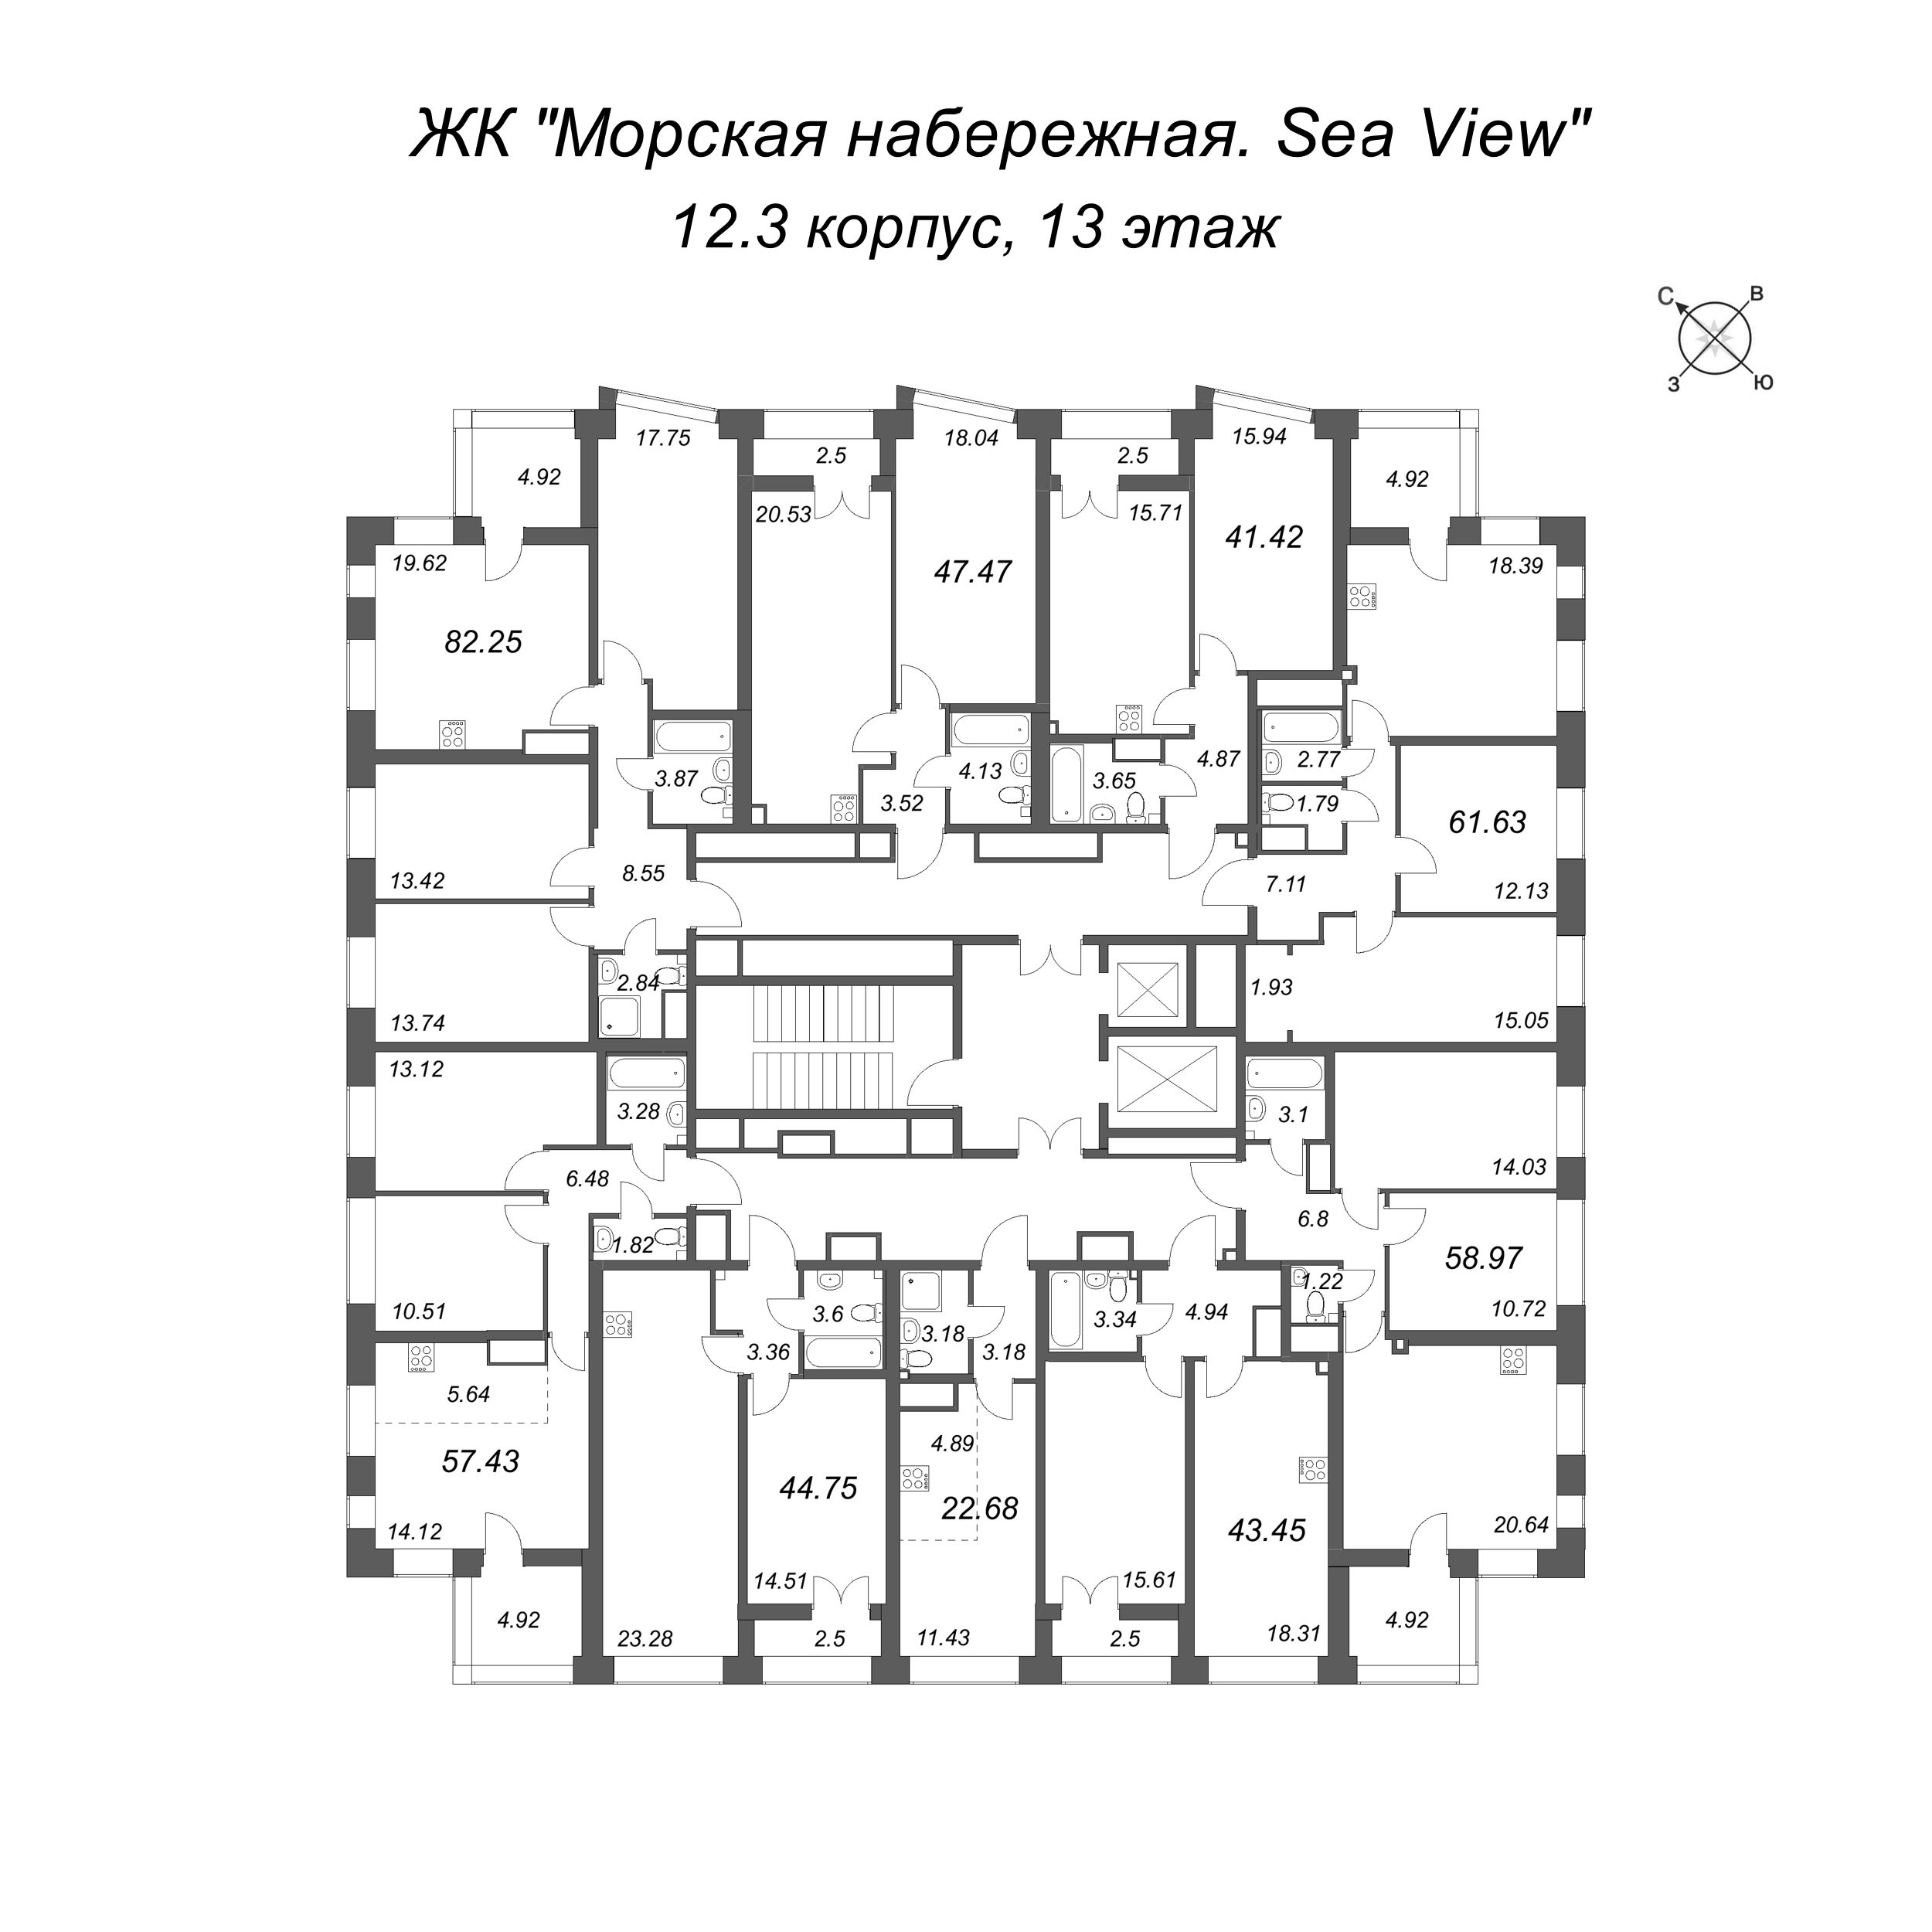 4-комнатная (Евро) квартира, 82.25 м² в ЖК "Морская набережная. SeaView" - планировка этажа